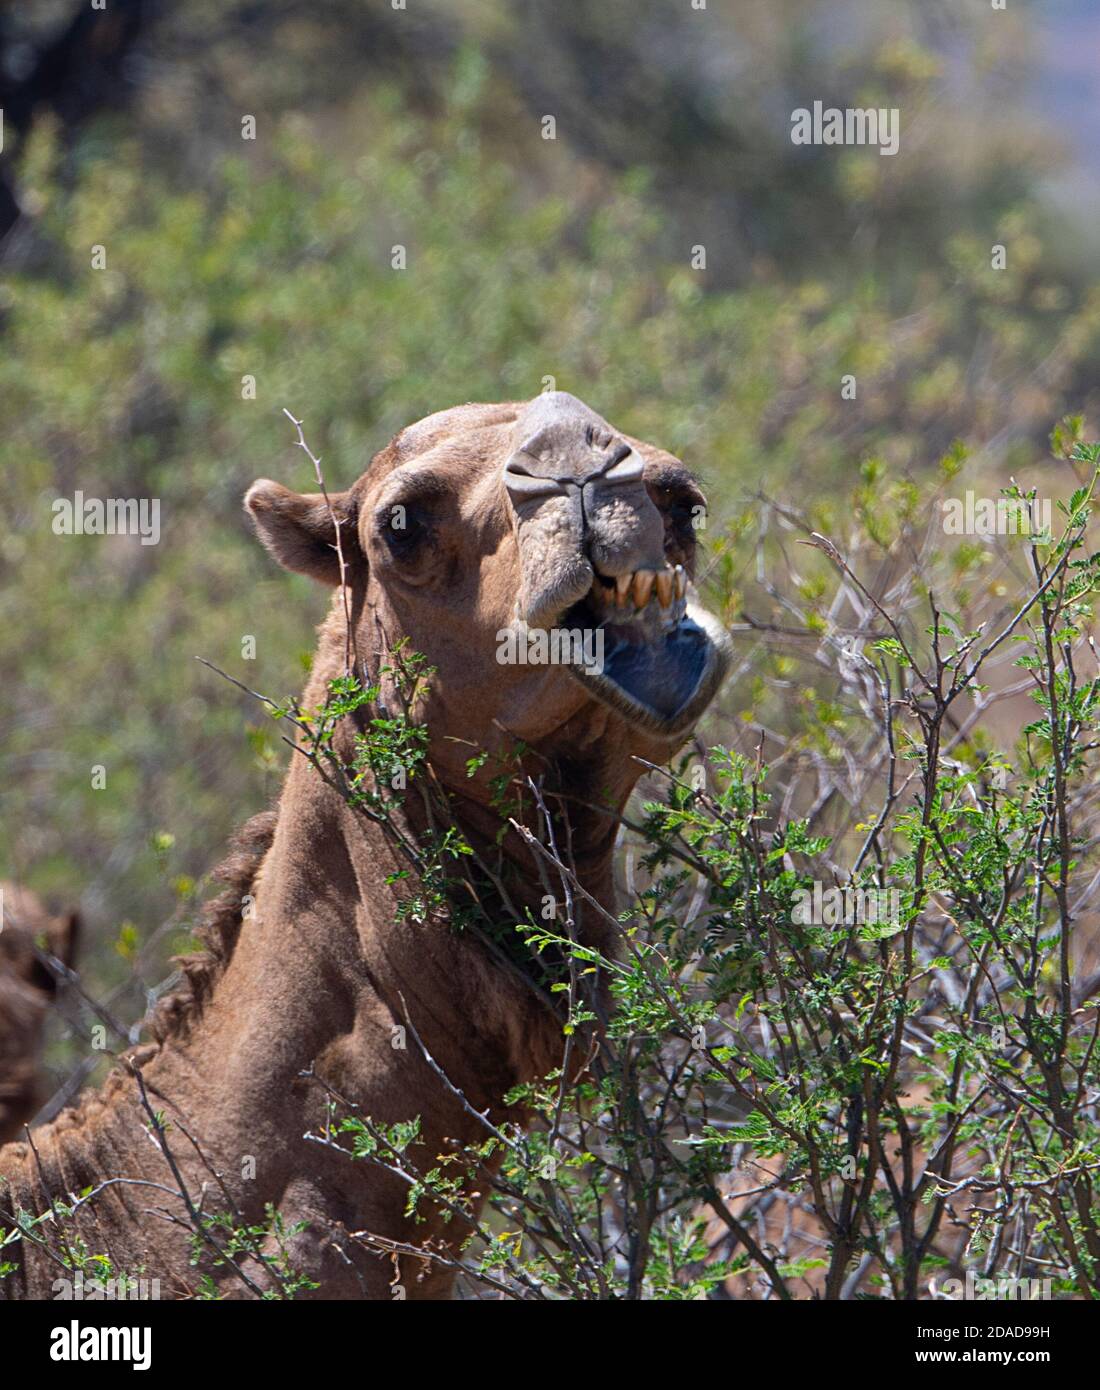 Chameau australien (Camelus dromedarius) en buissons, Queensland, Queensland, Australie Banque D'Images